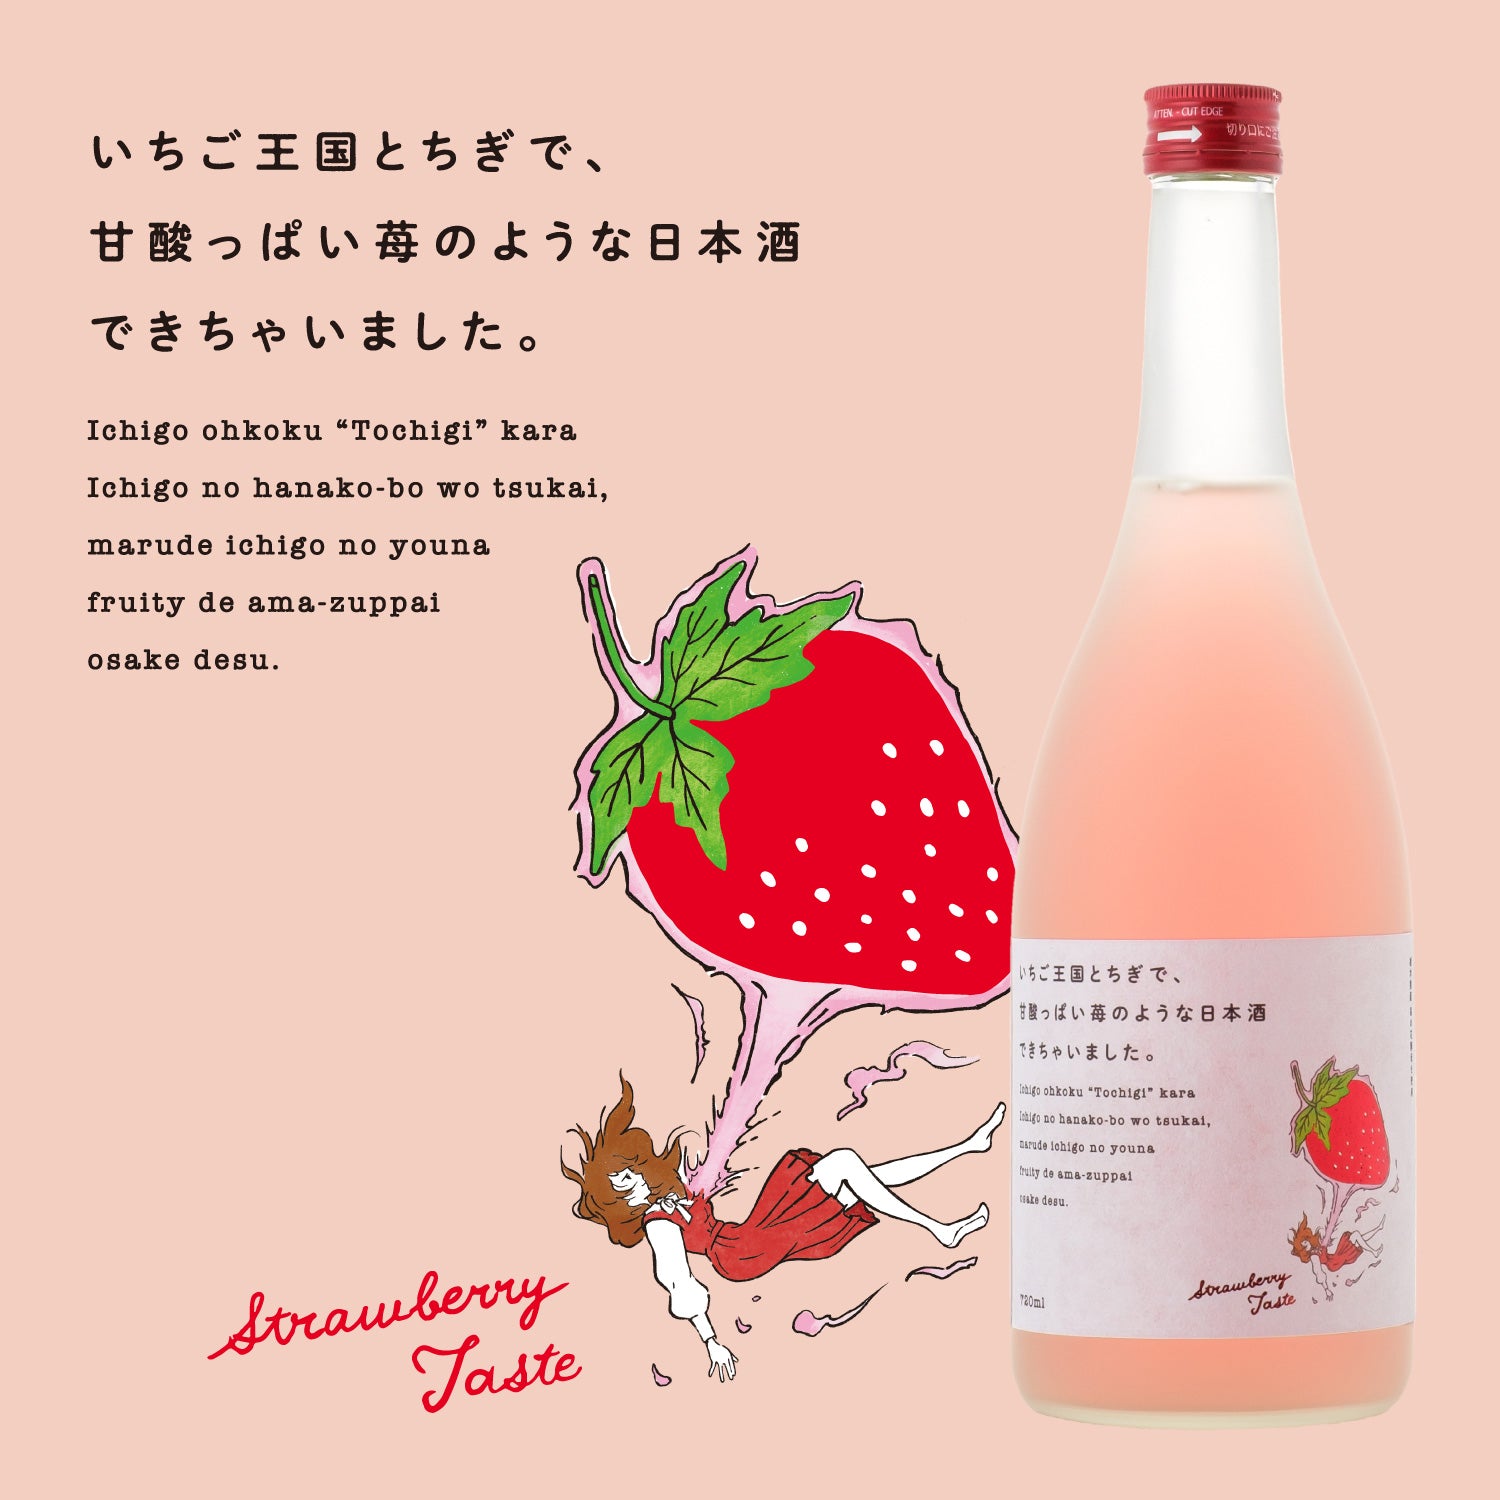 いちご王国とちぎで、甘酸っぱい苺のような日本酒できちゃいました。